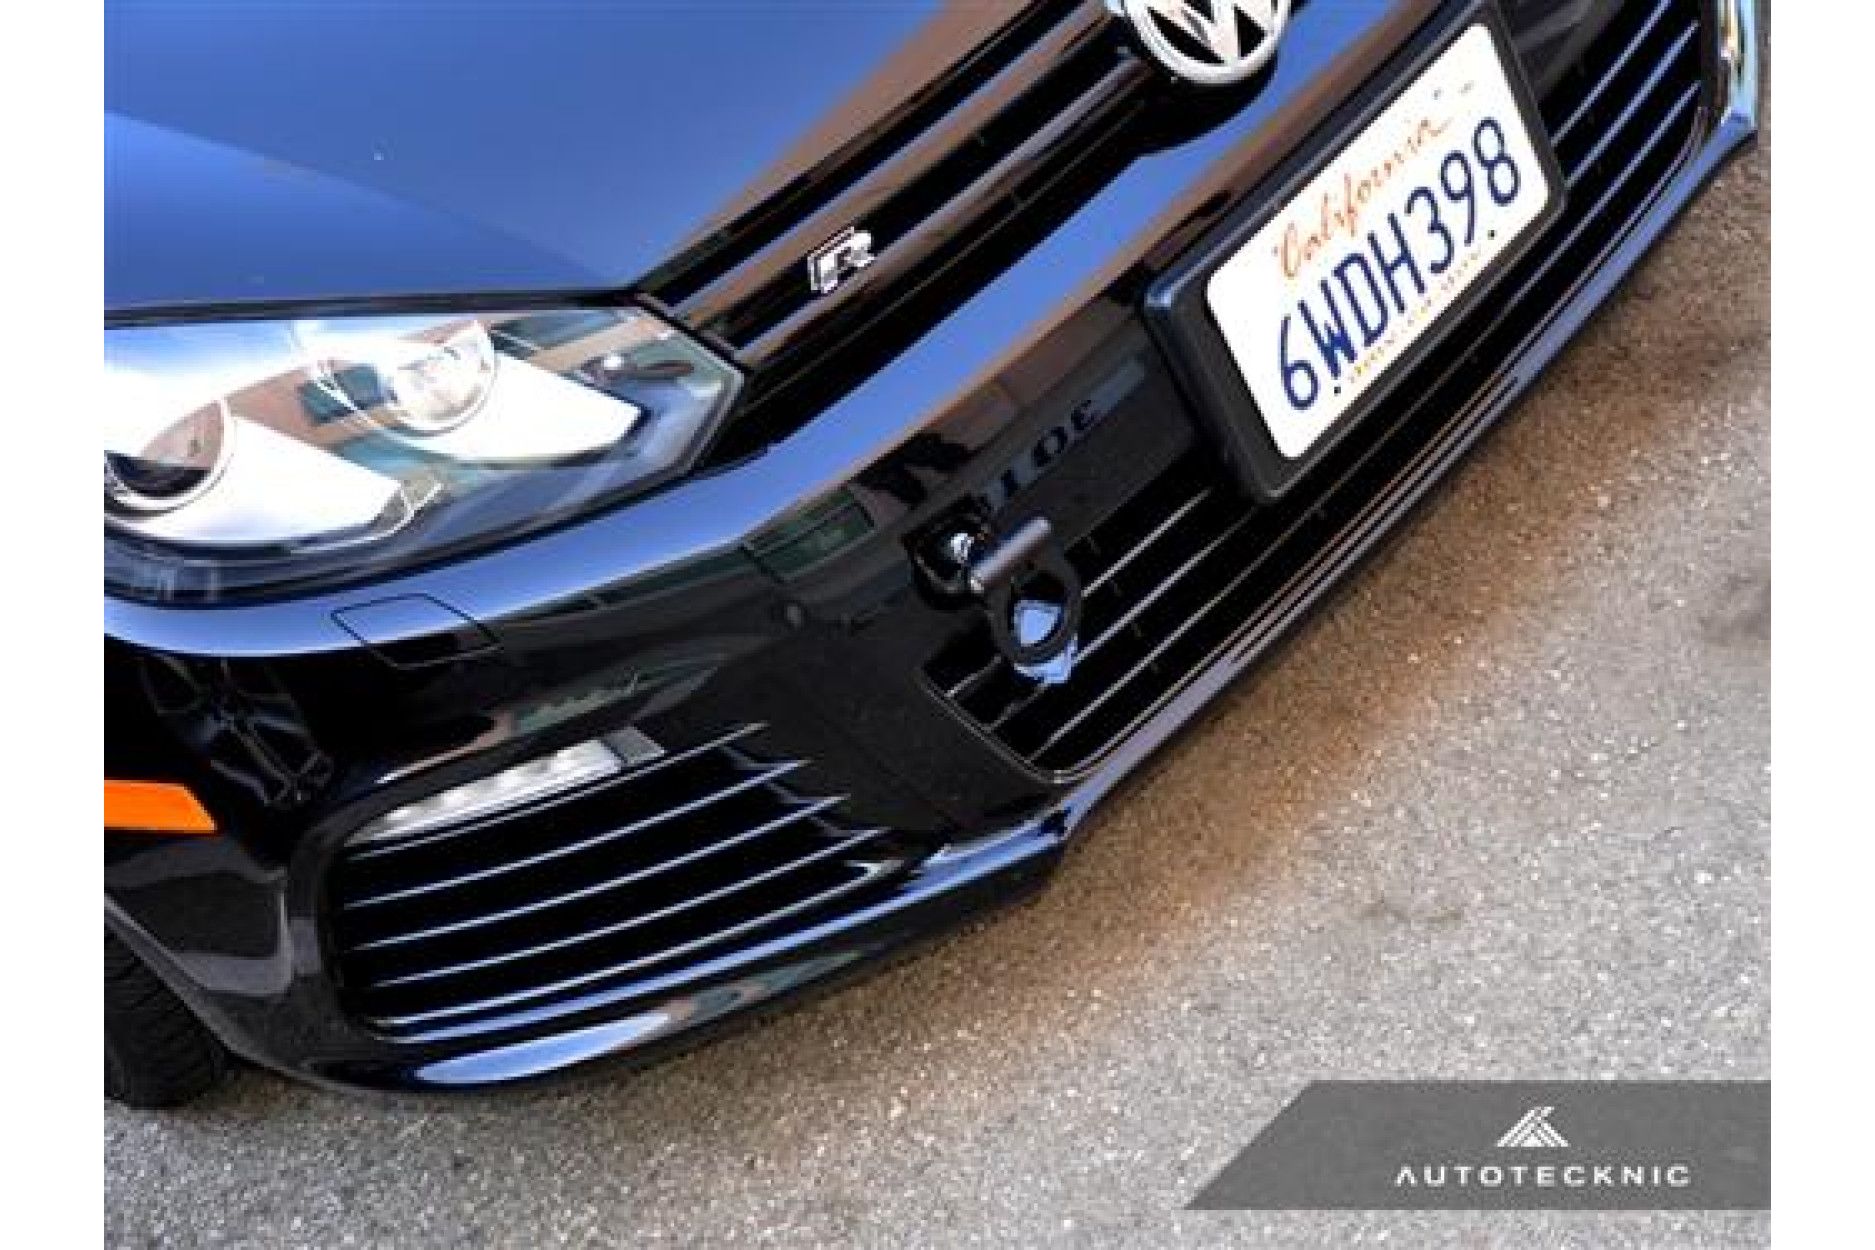 Autotecknic Aluminium Abschlepphaken für VW Golf MK5 - online kaufen bei CFD